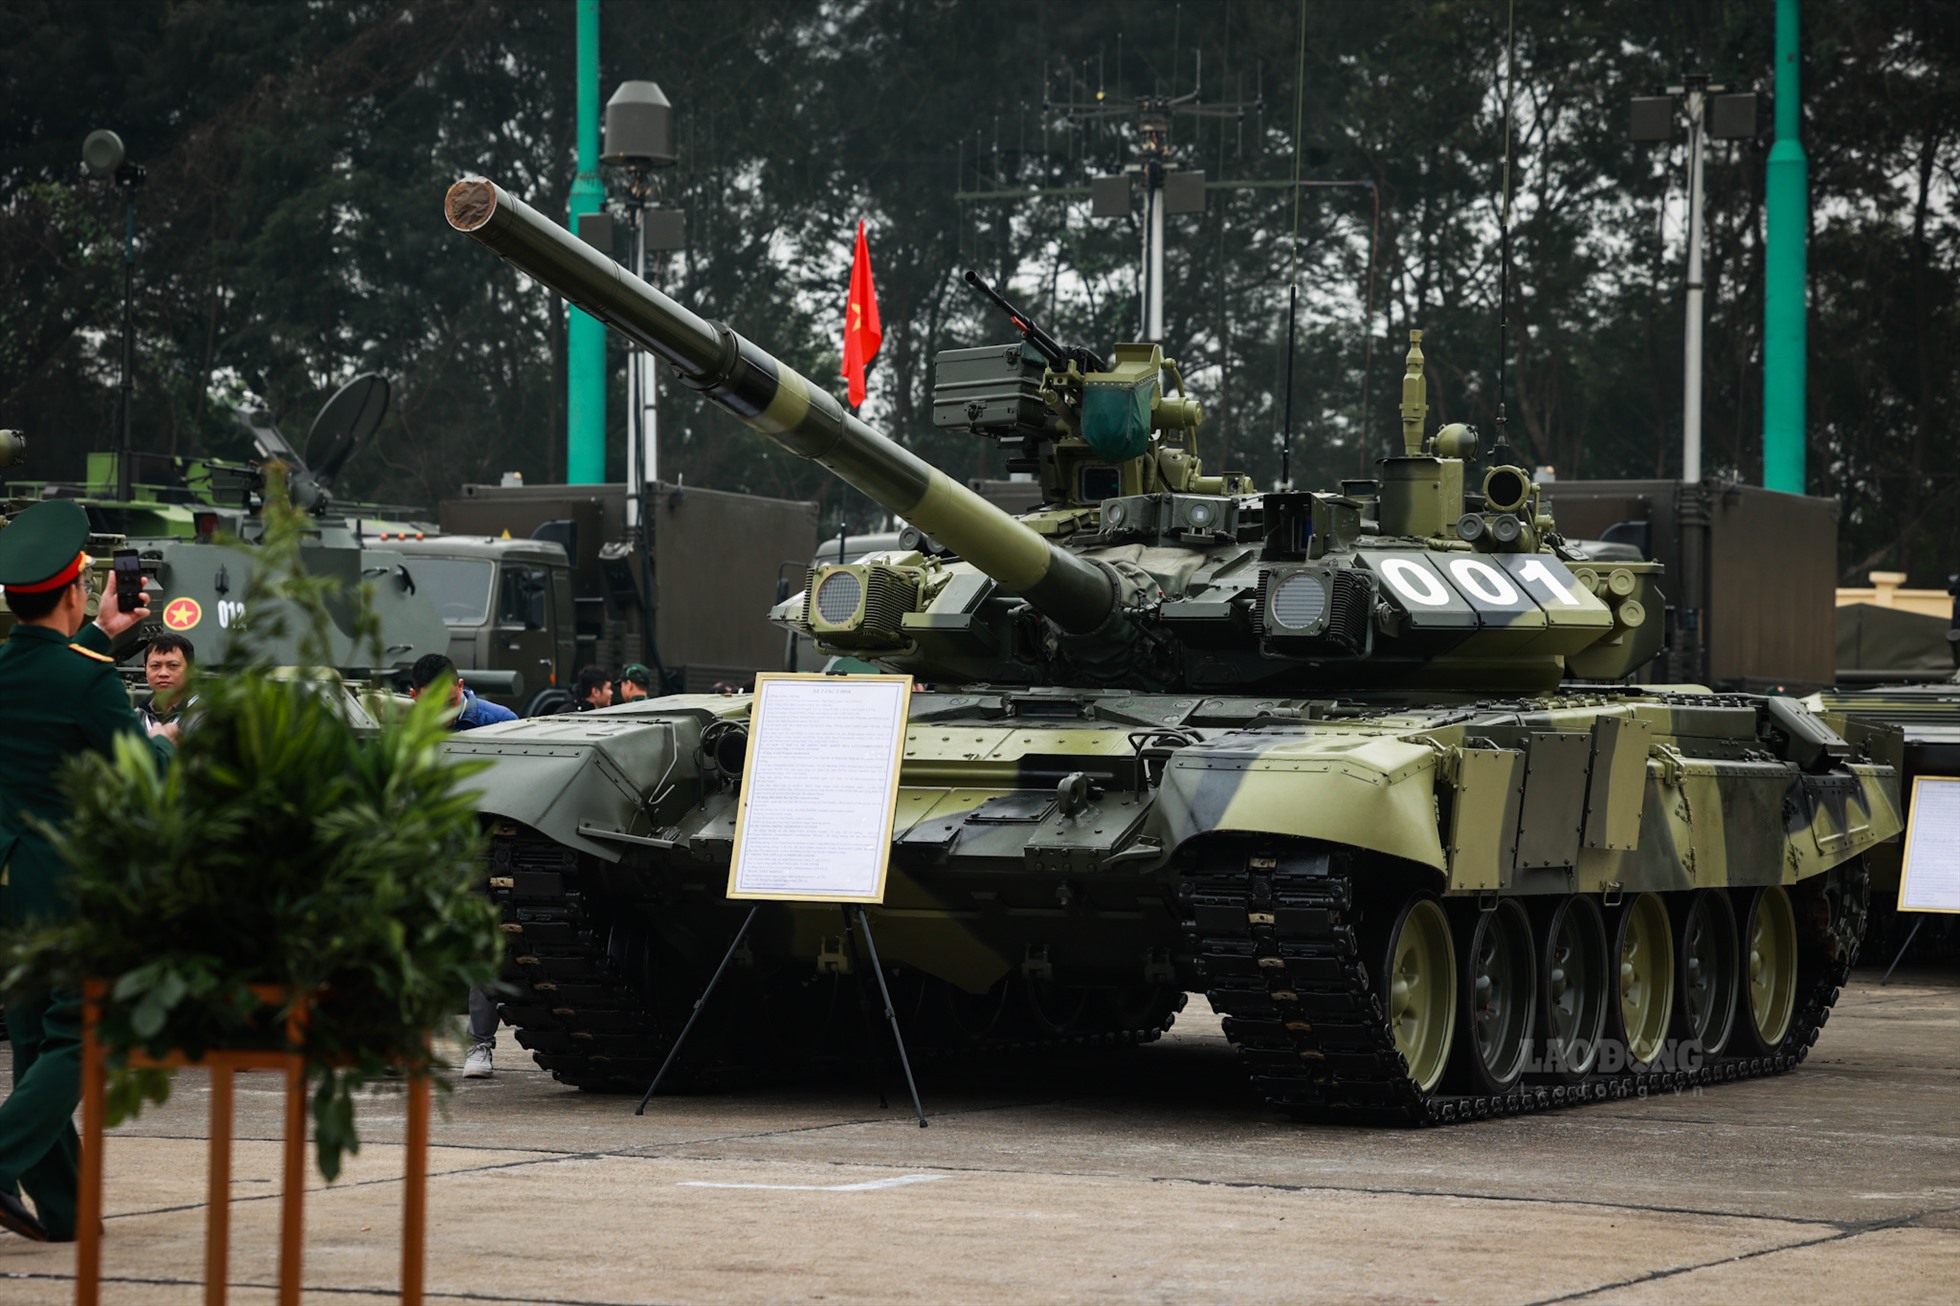 Xe tăng T-90SK hiện đại của quân đội nhân dân Việt Nam. Kíp lái T90 gồm 3 chiến sĩ bao gồm 1 trưởng xe, 1 pháo thủ và lái xe. Mẫu T90 nặng 46,5 tấn, chiều dài 9,67m, rộng 3,78m và cao 2,86m. Tăng đạt vận tốc tối đa 60km/h. Tổ hợp vũ khí của T90 gồm pháo 125mm, tốc độ bắn 8 viên/phút.